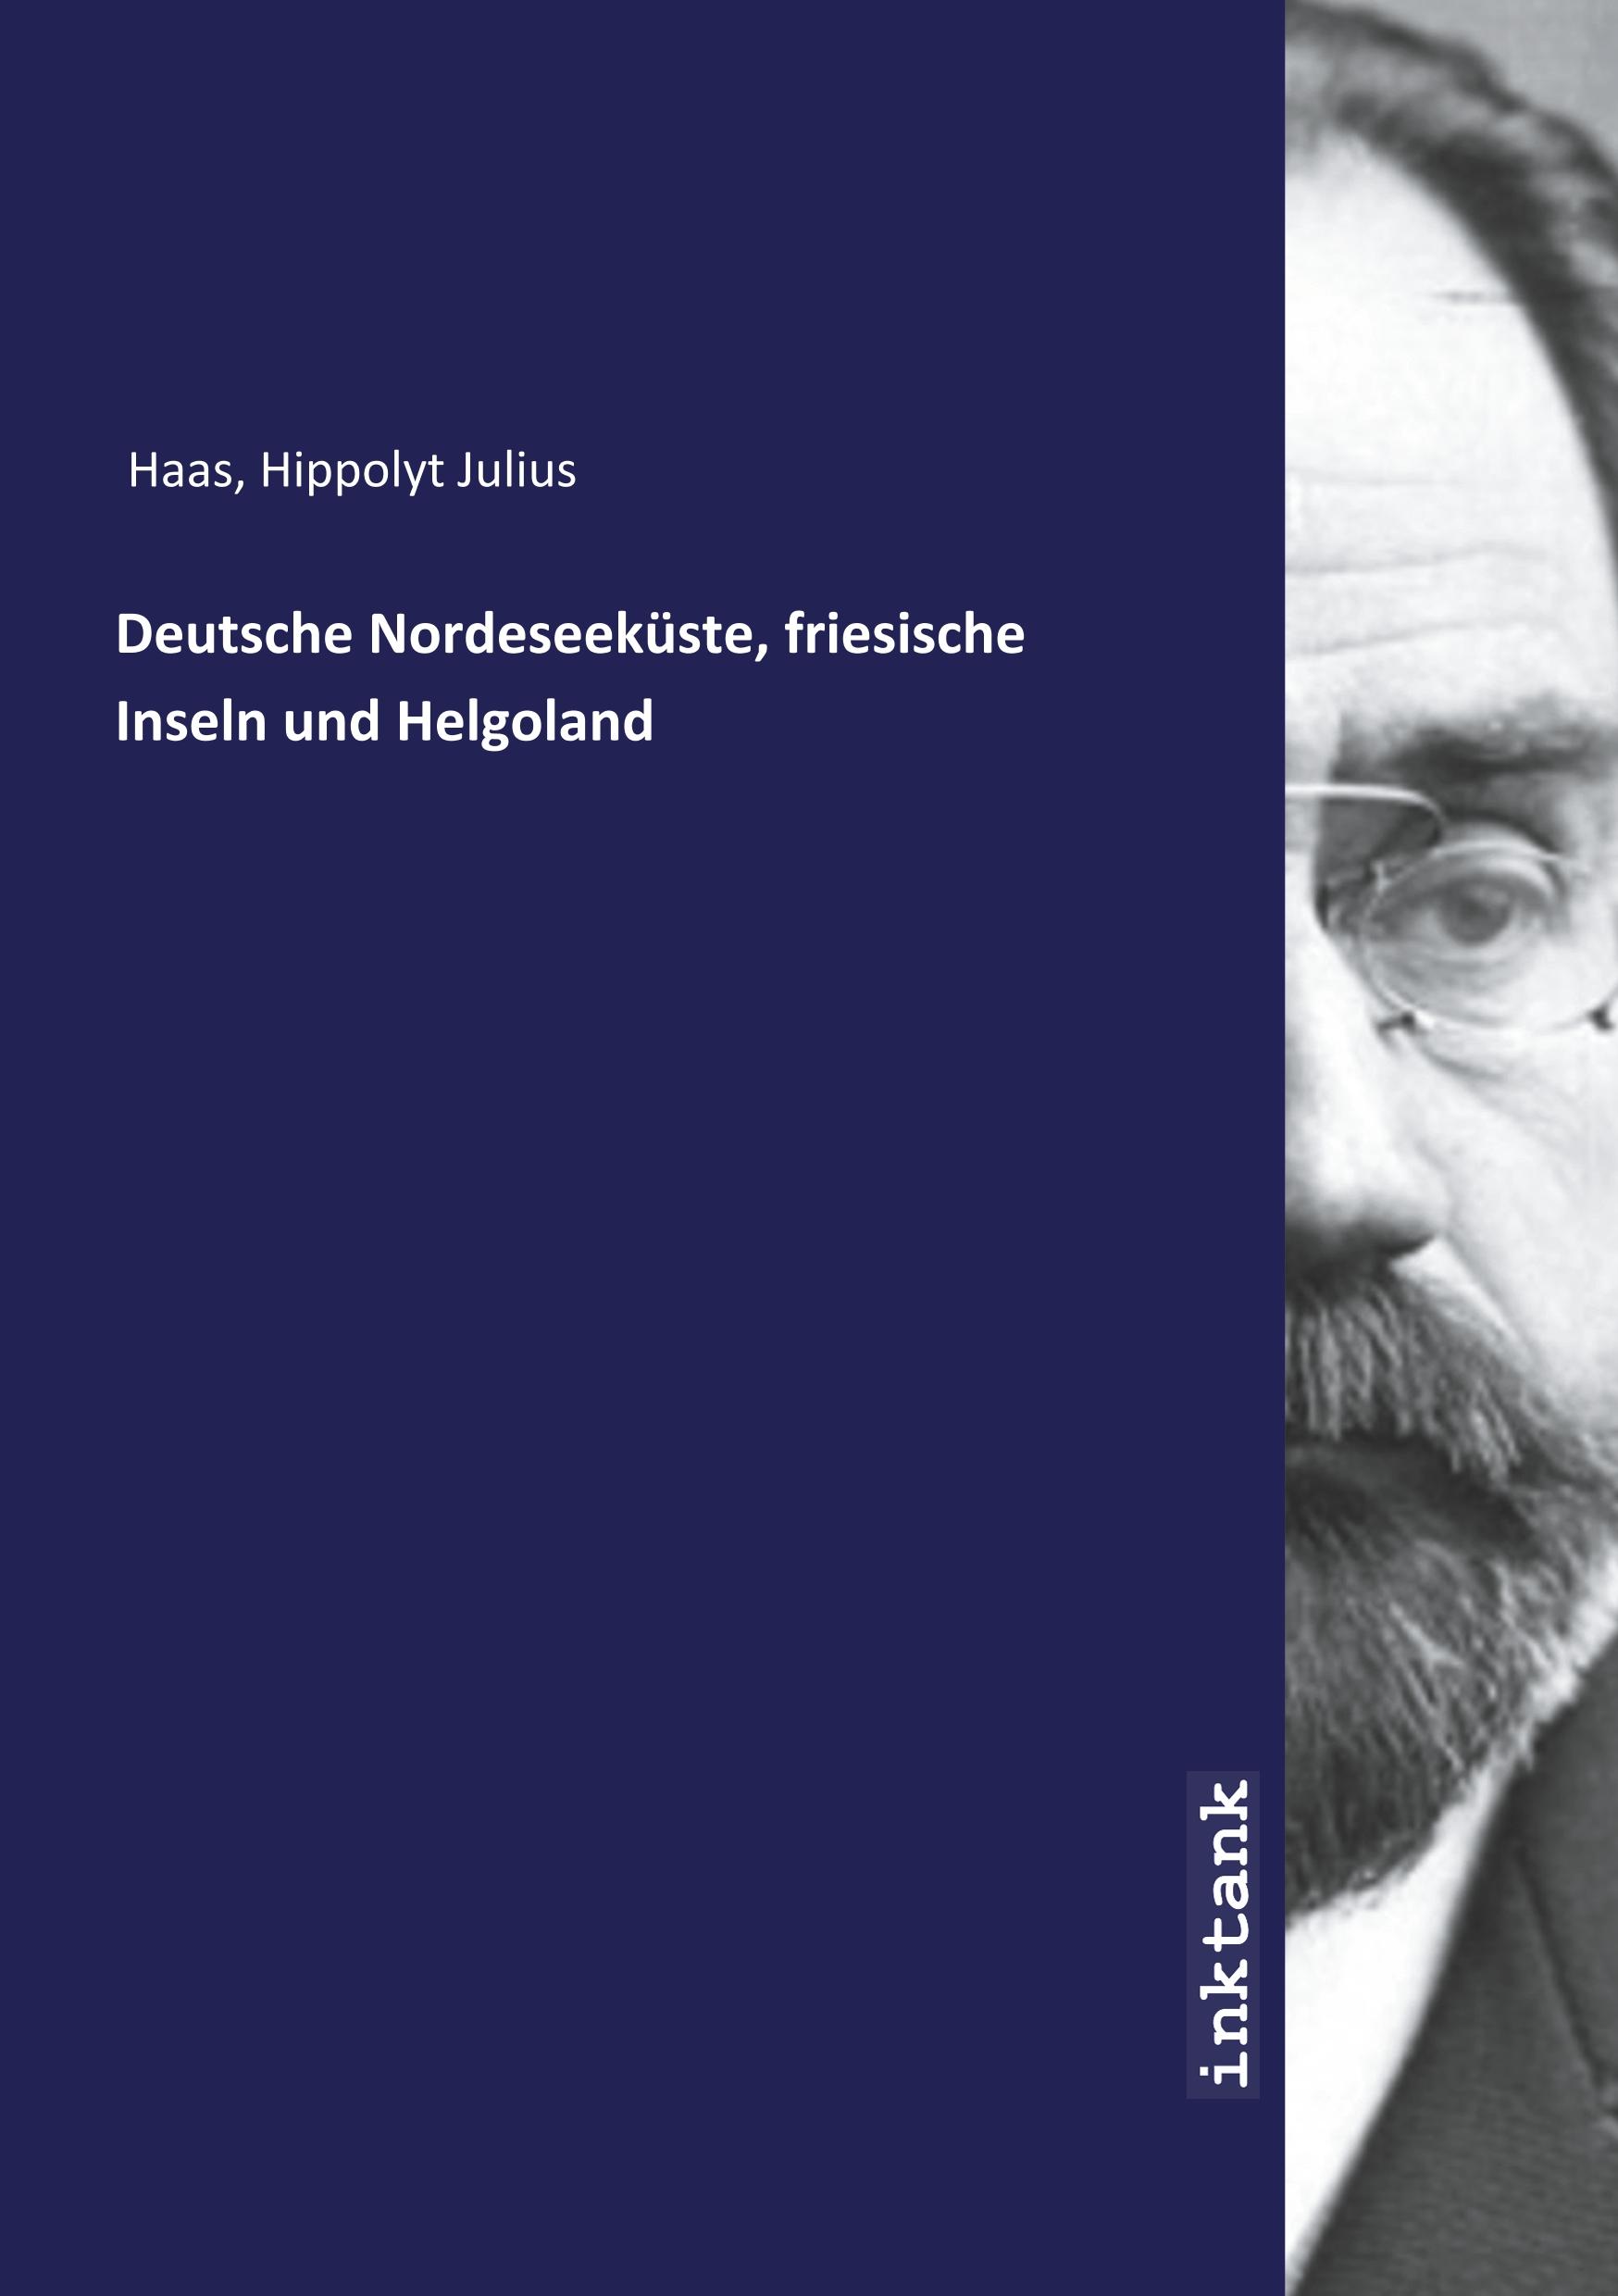 Deutsche Nordeseekueste, friesische Inseln und Helgoland - Haas, Hippolyt Julius